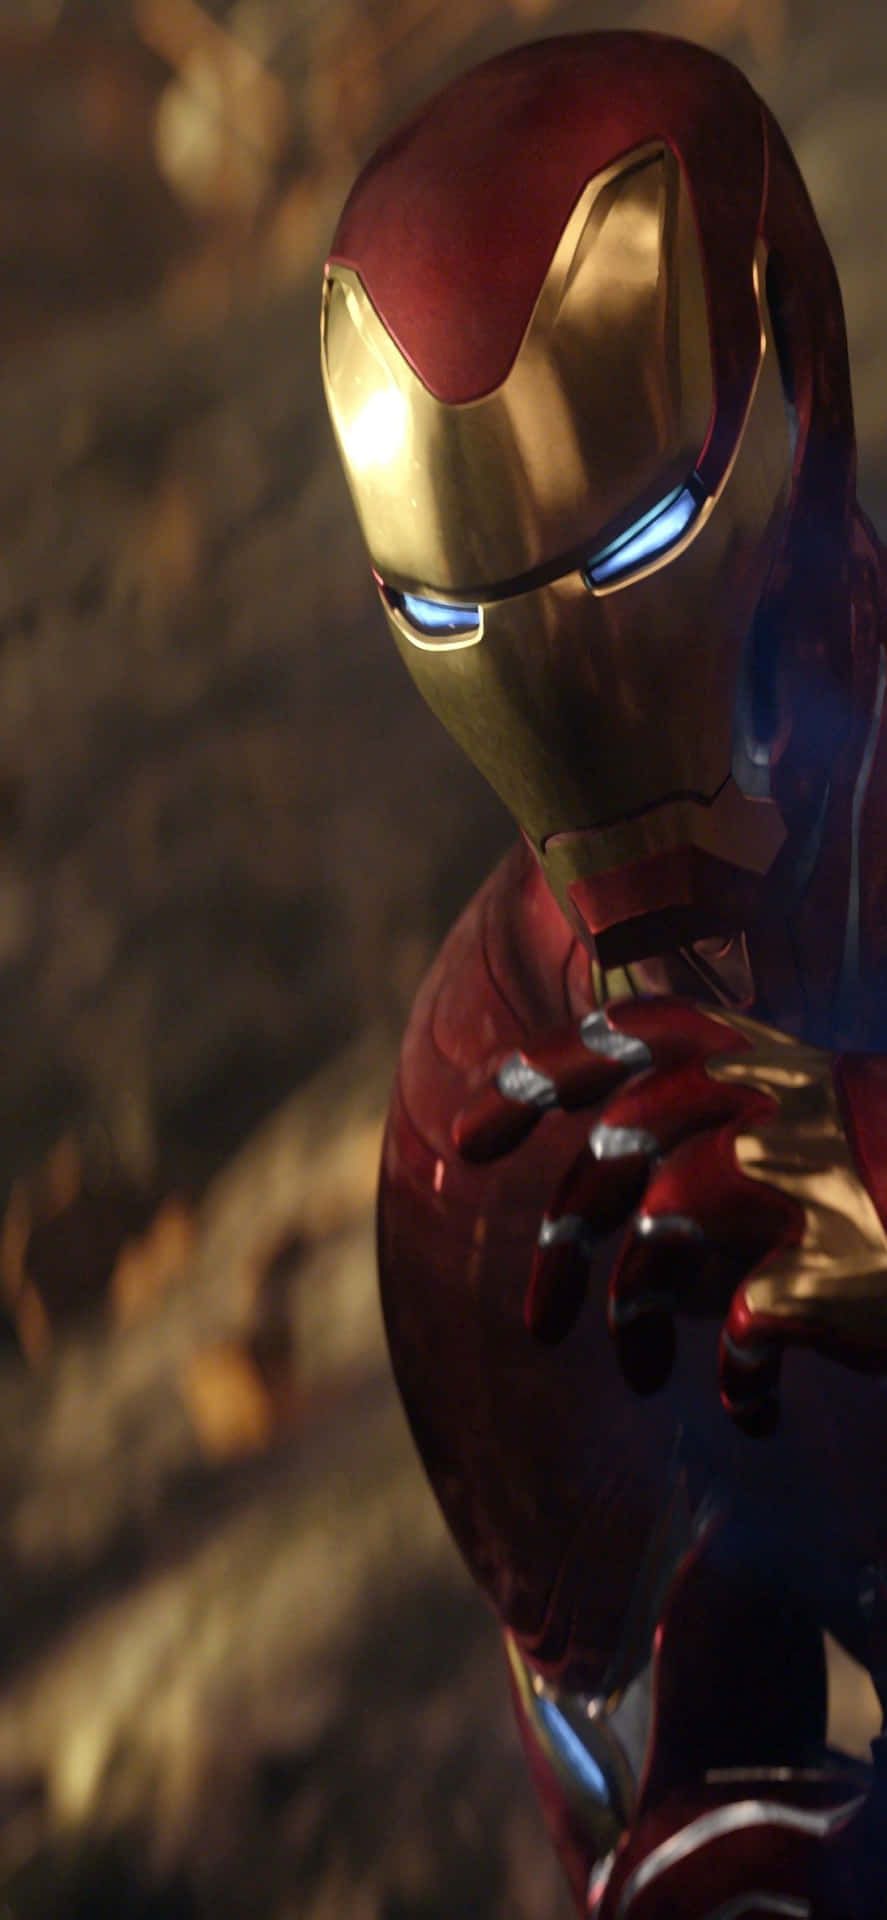 Hintergrundbildfür Das Iphone X Mit Iron Man Im Goldenen Roten Anzug.